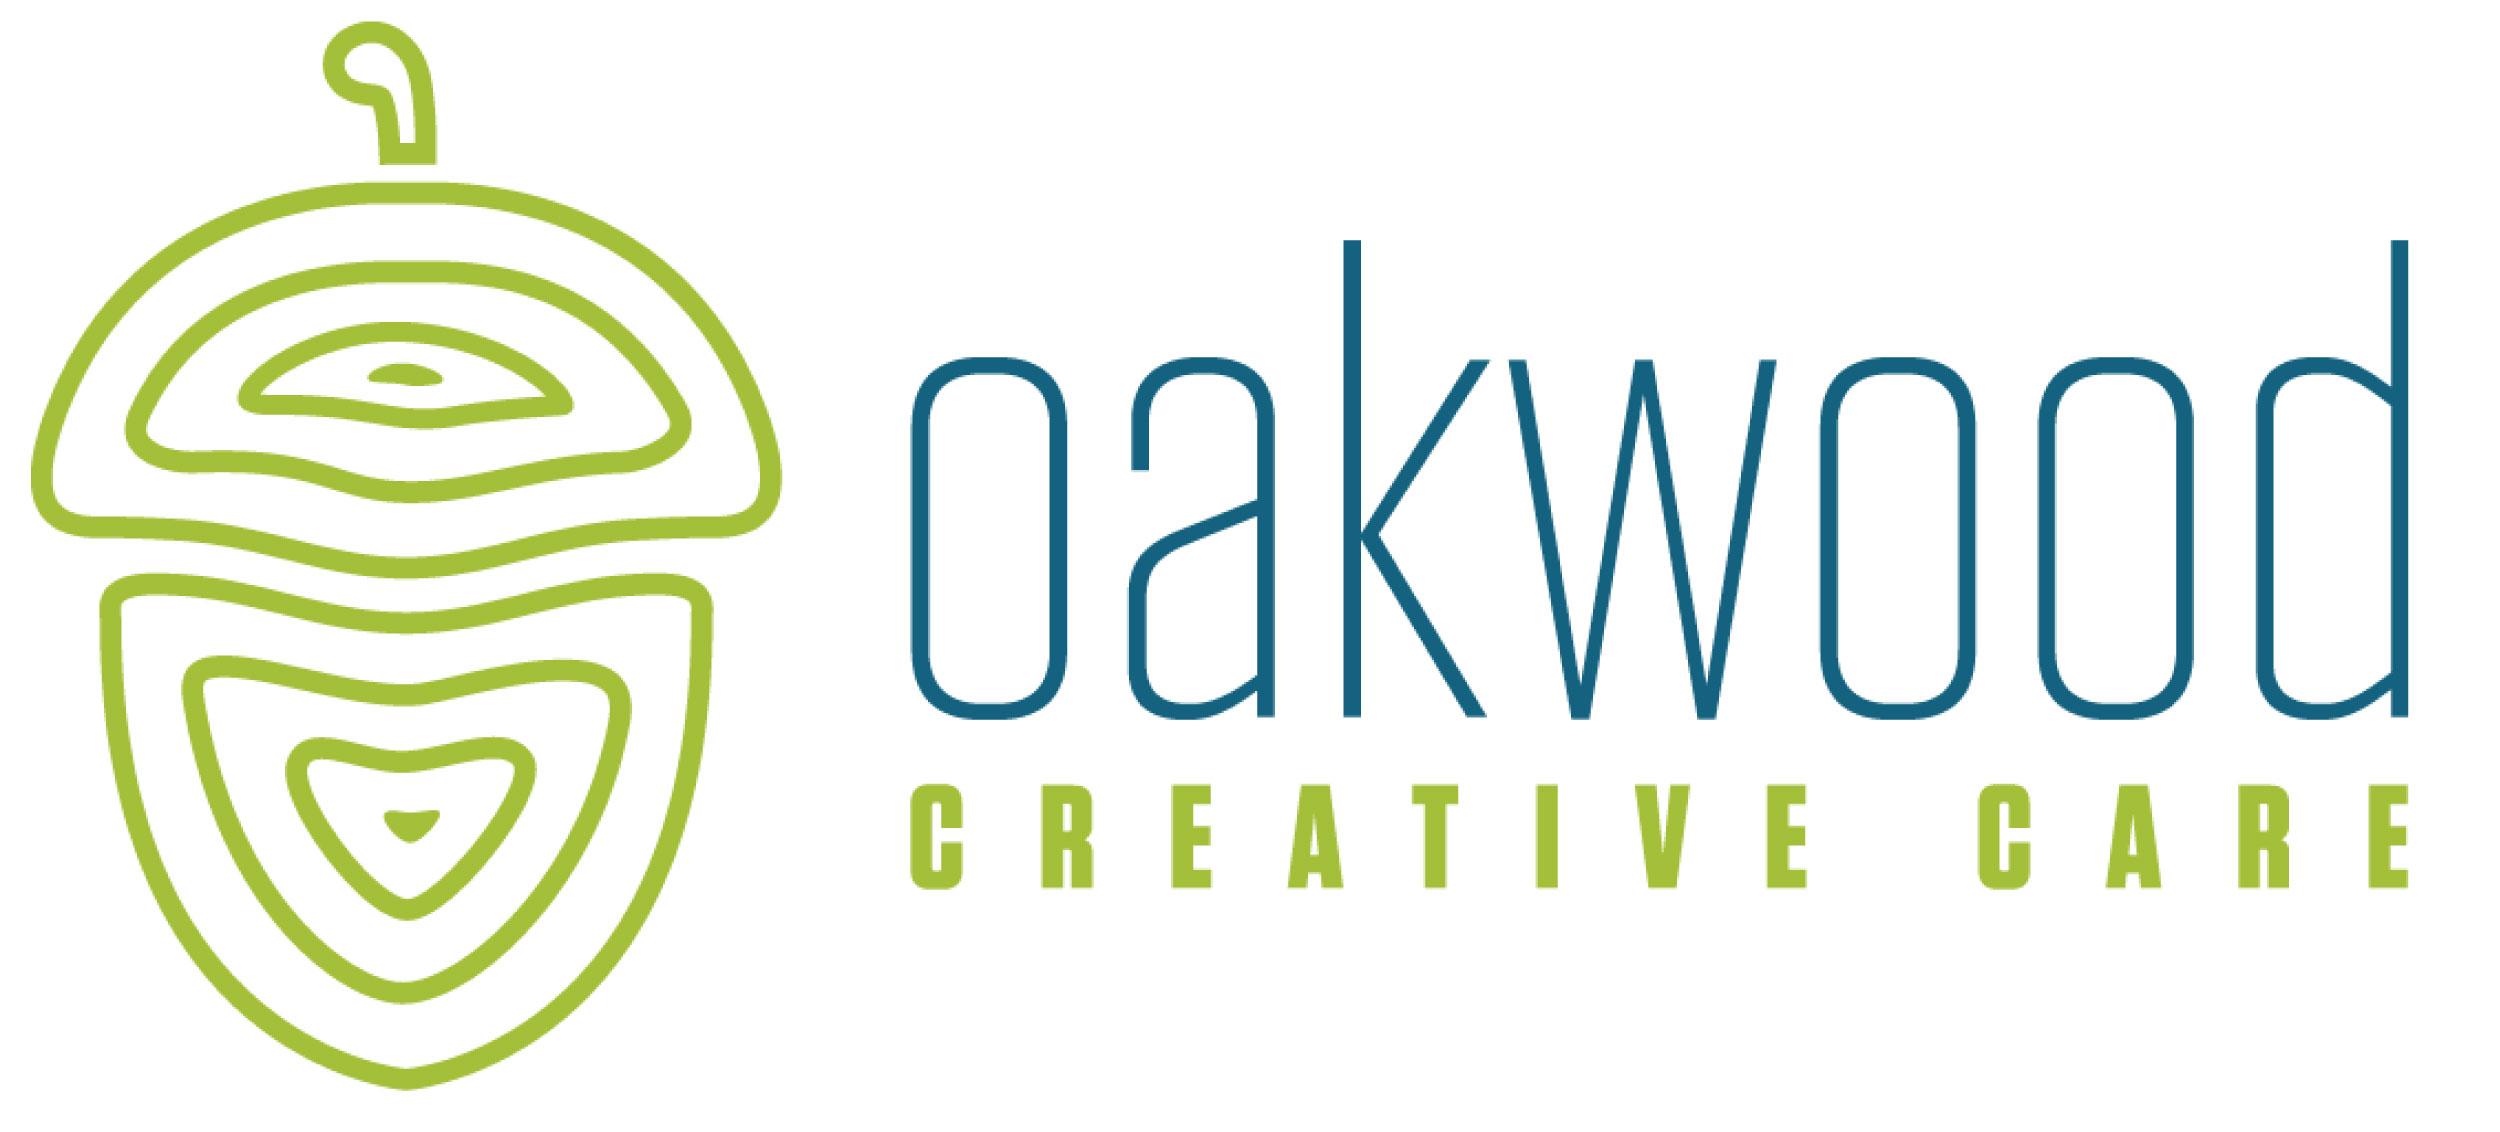 bowles-logo-oakwood-creative-care